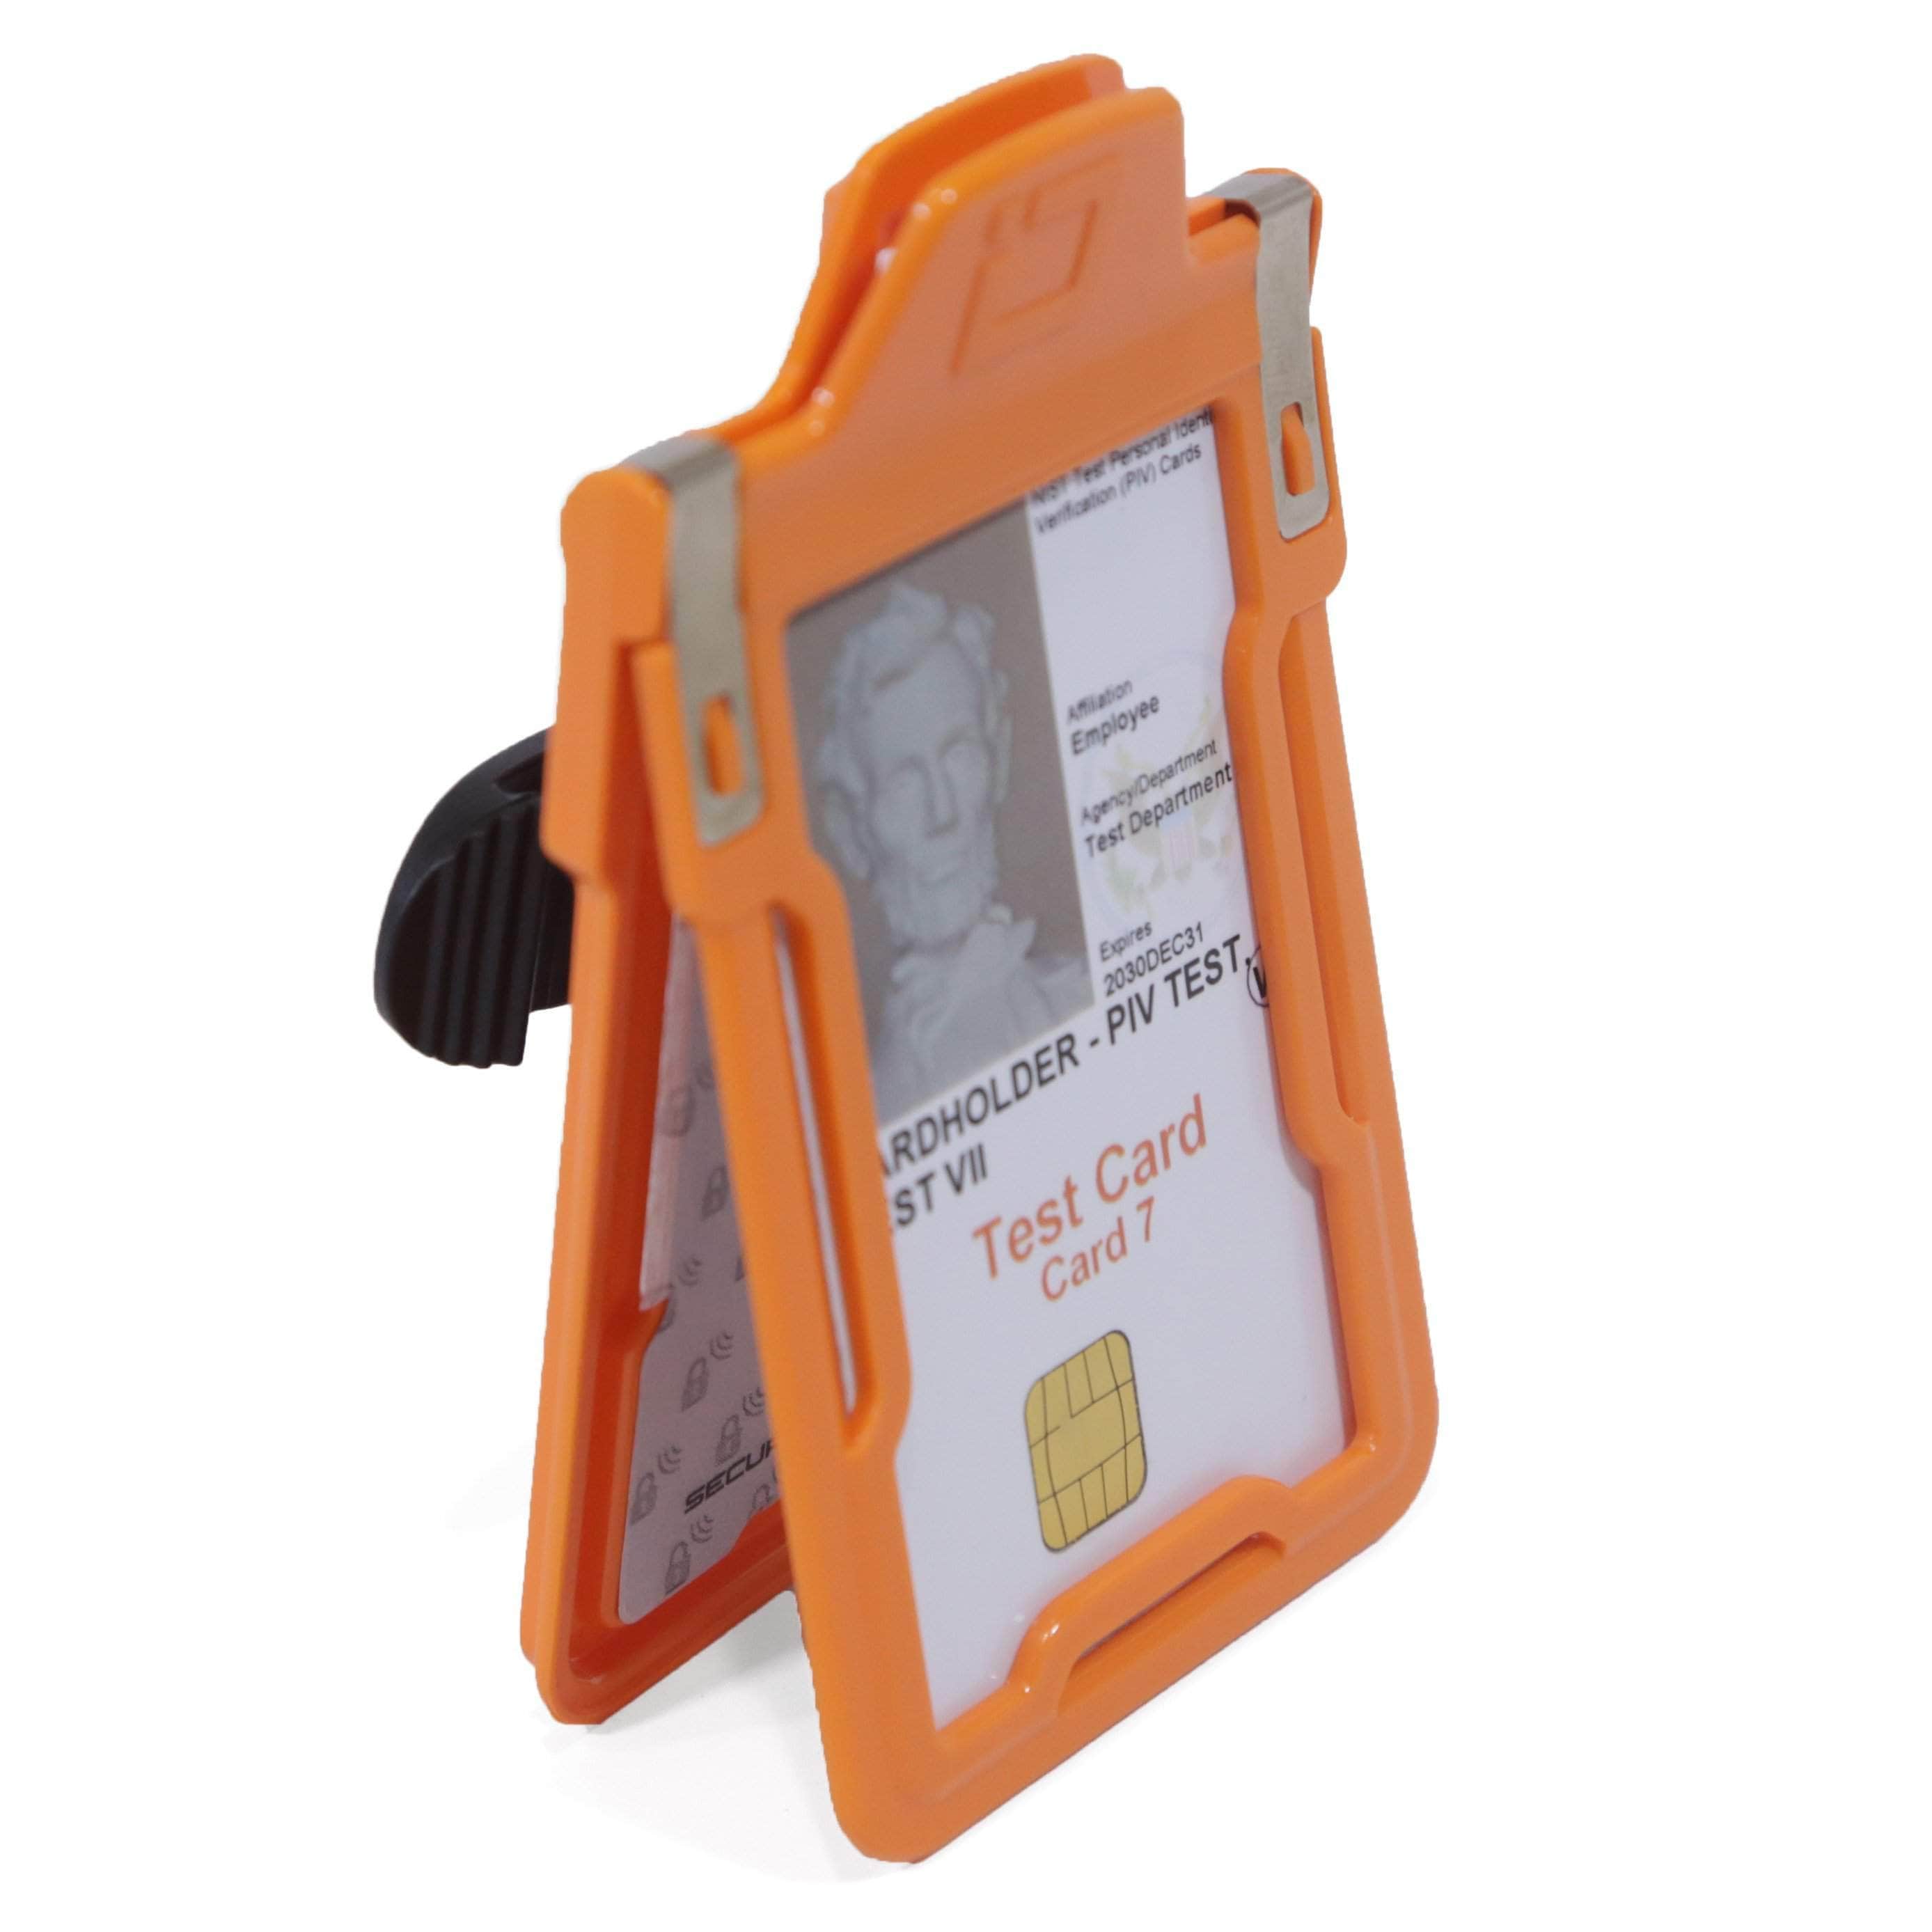 ID Stronghold Badgeholder Secure Badge Holder Classic Vertical 1 Card Holder With Belt Clip